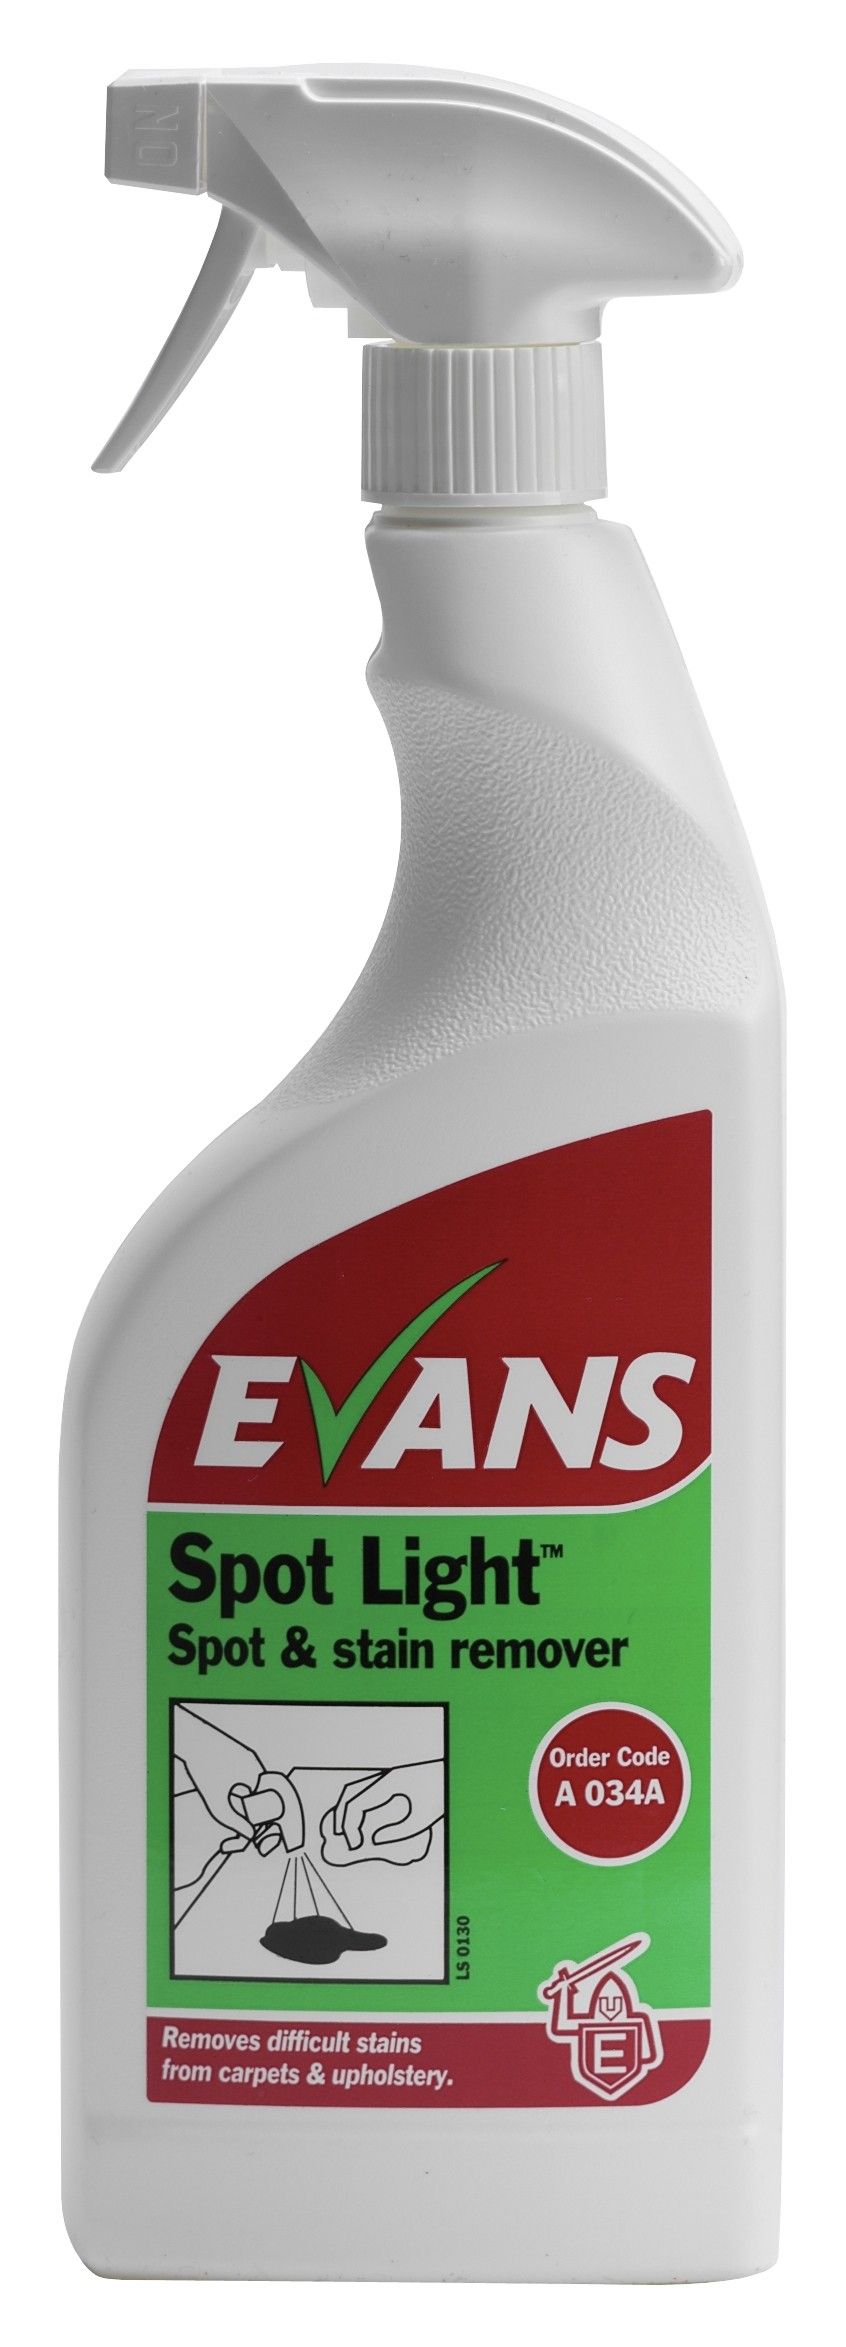 Evans Spotlight - Carpet & Upholstery Stain Remover 750ml RTU